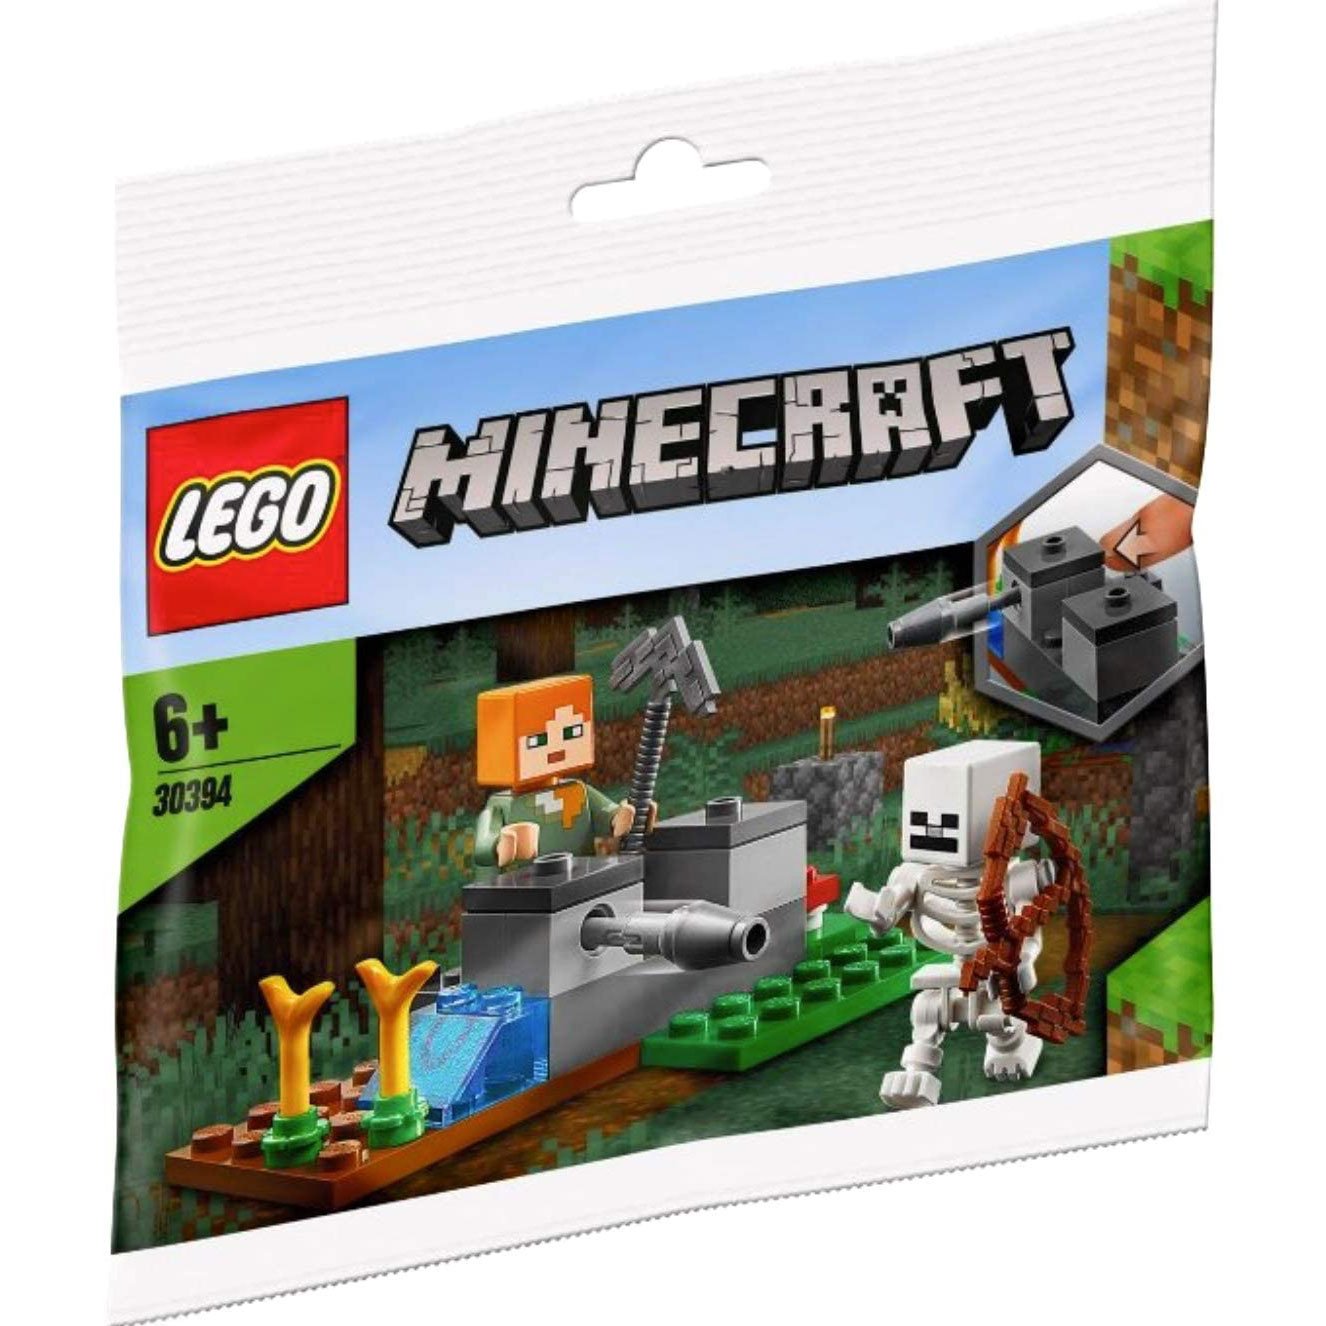 楽天市場 レゴ マインクラフト アレックスとスケルトン ミニセット Lego Minecraft Alex Skeleton 30394 ついばみ商店